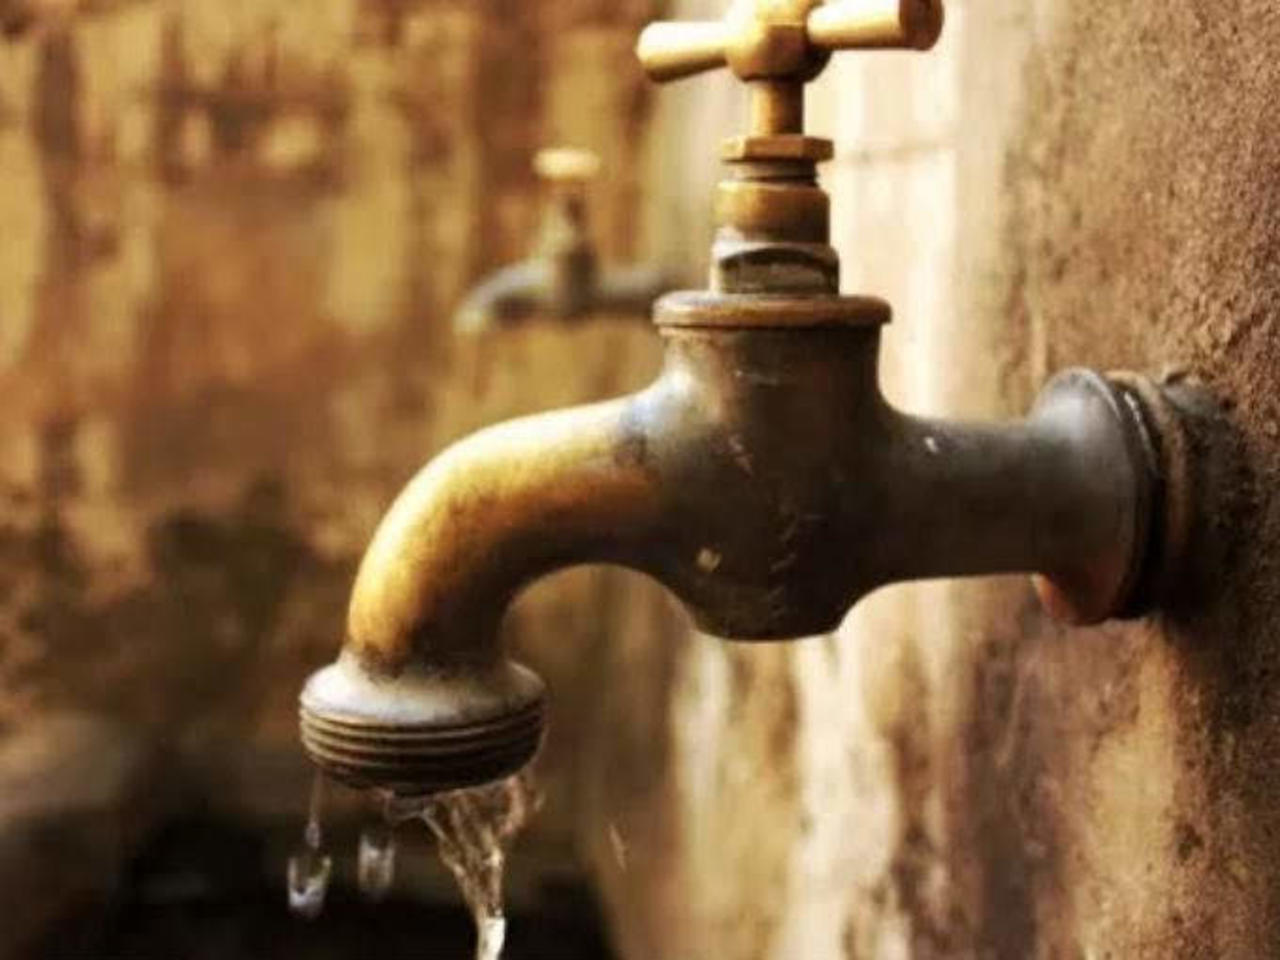 Legisladores piden solucionar desabasto de agua en La Concha ejido de Torreón